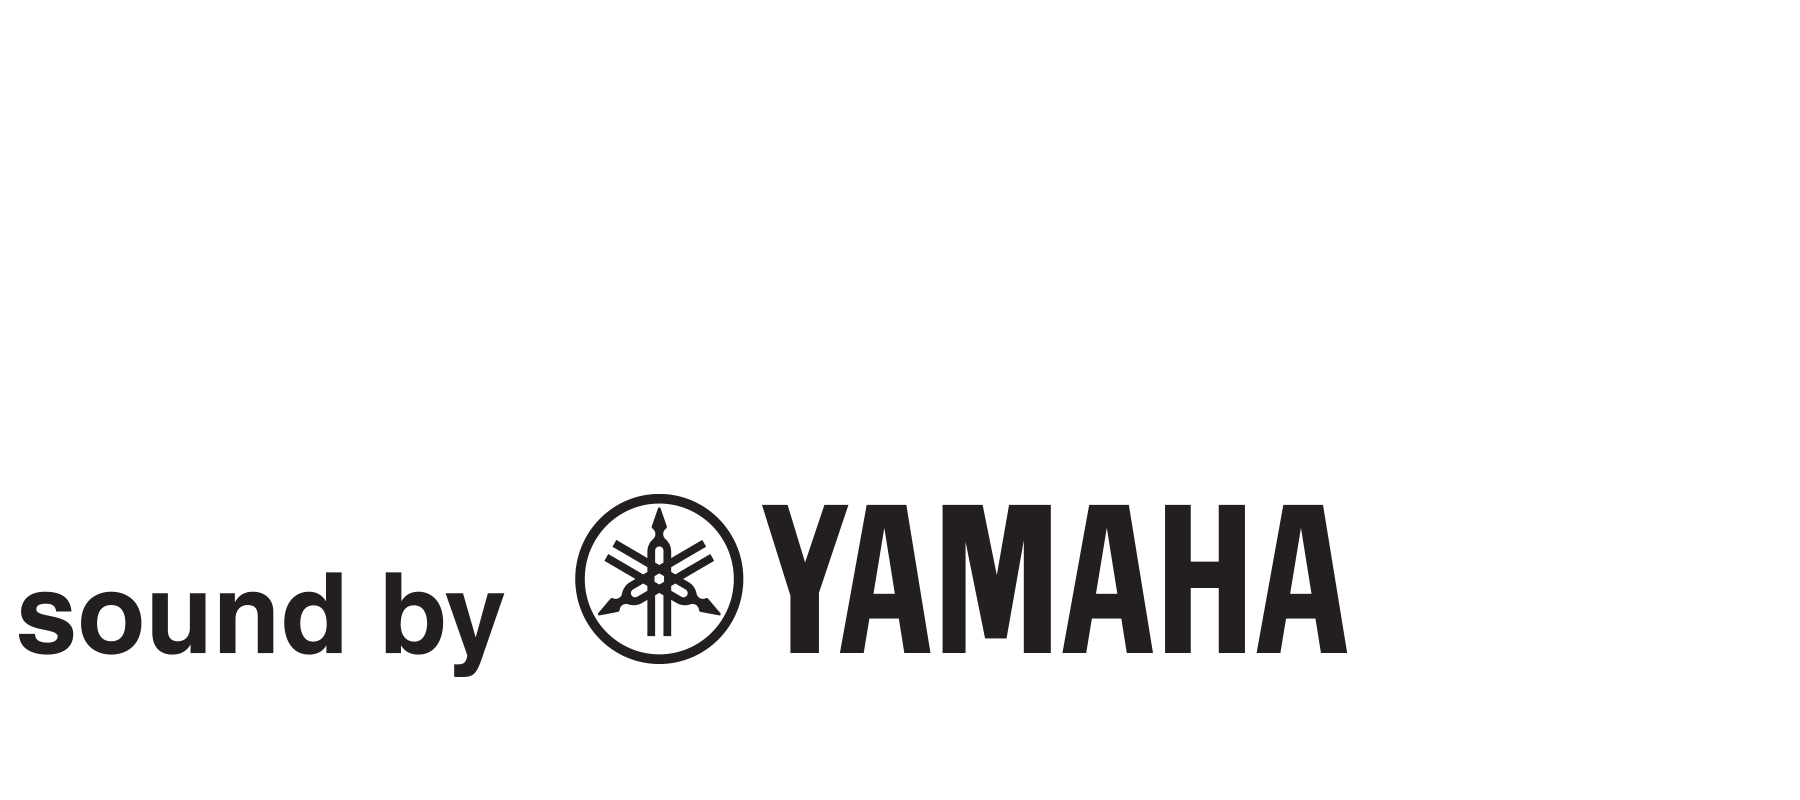 sound by Yamaha